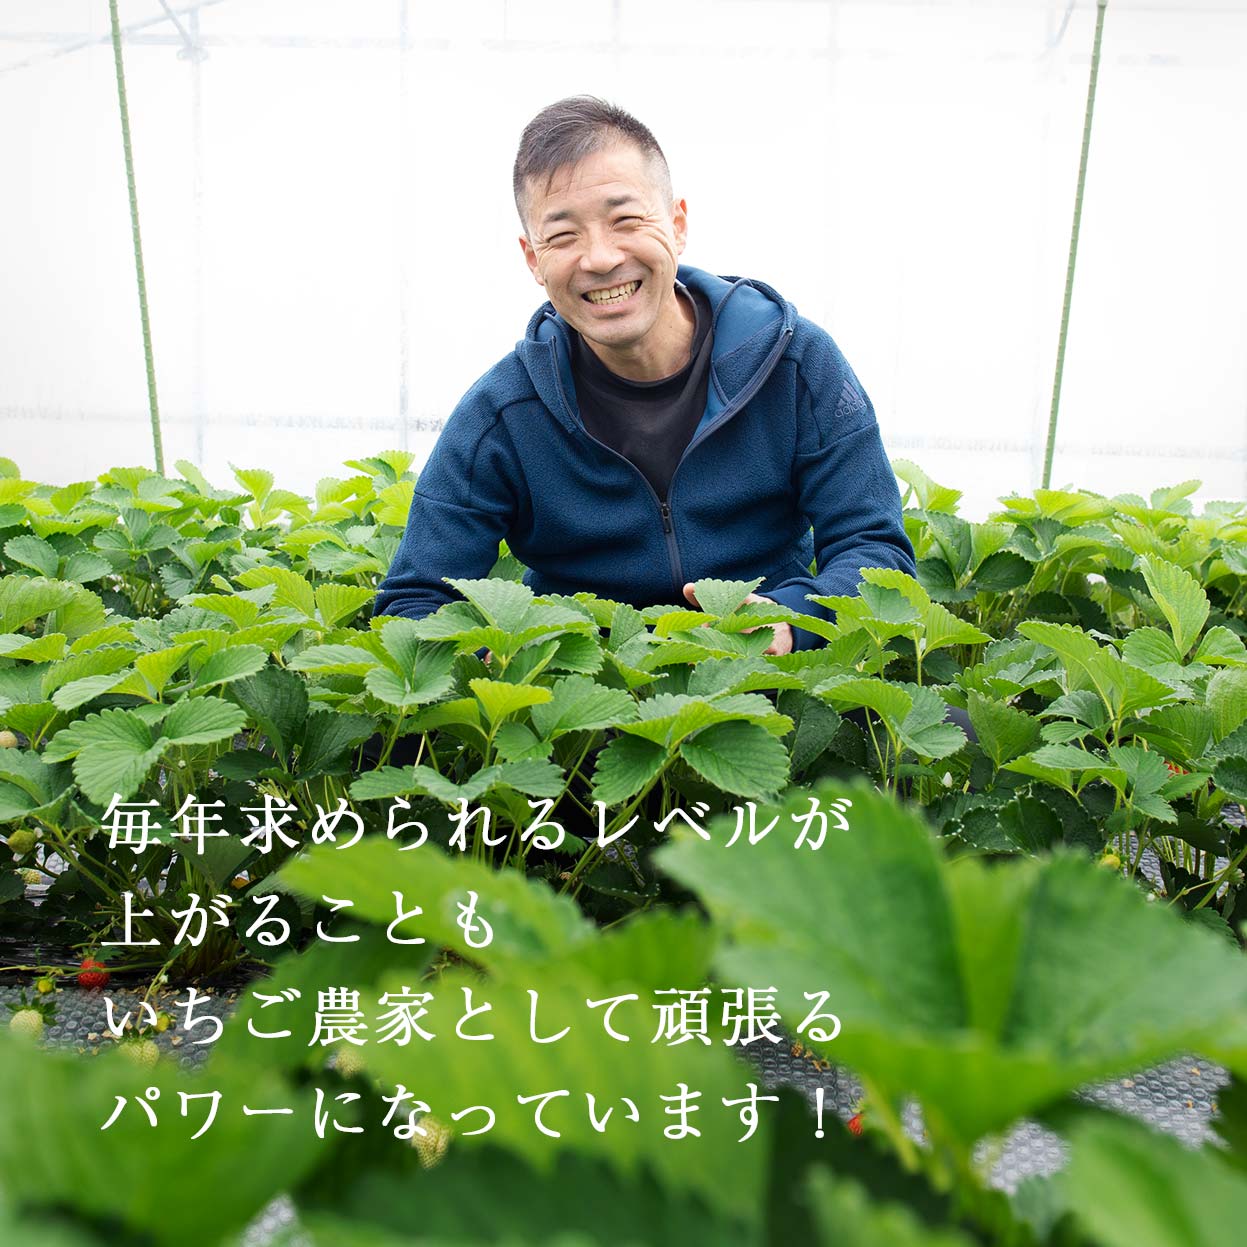 Đơn hàng trồng và thu hoạch đâu tây tại Kumamoto, Nhật Bản 